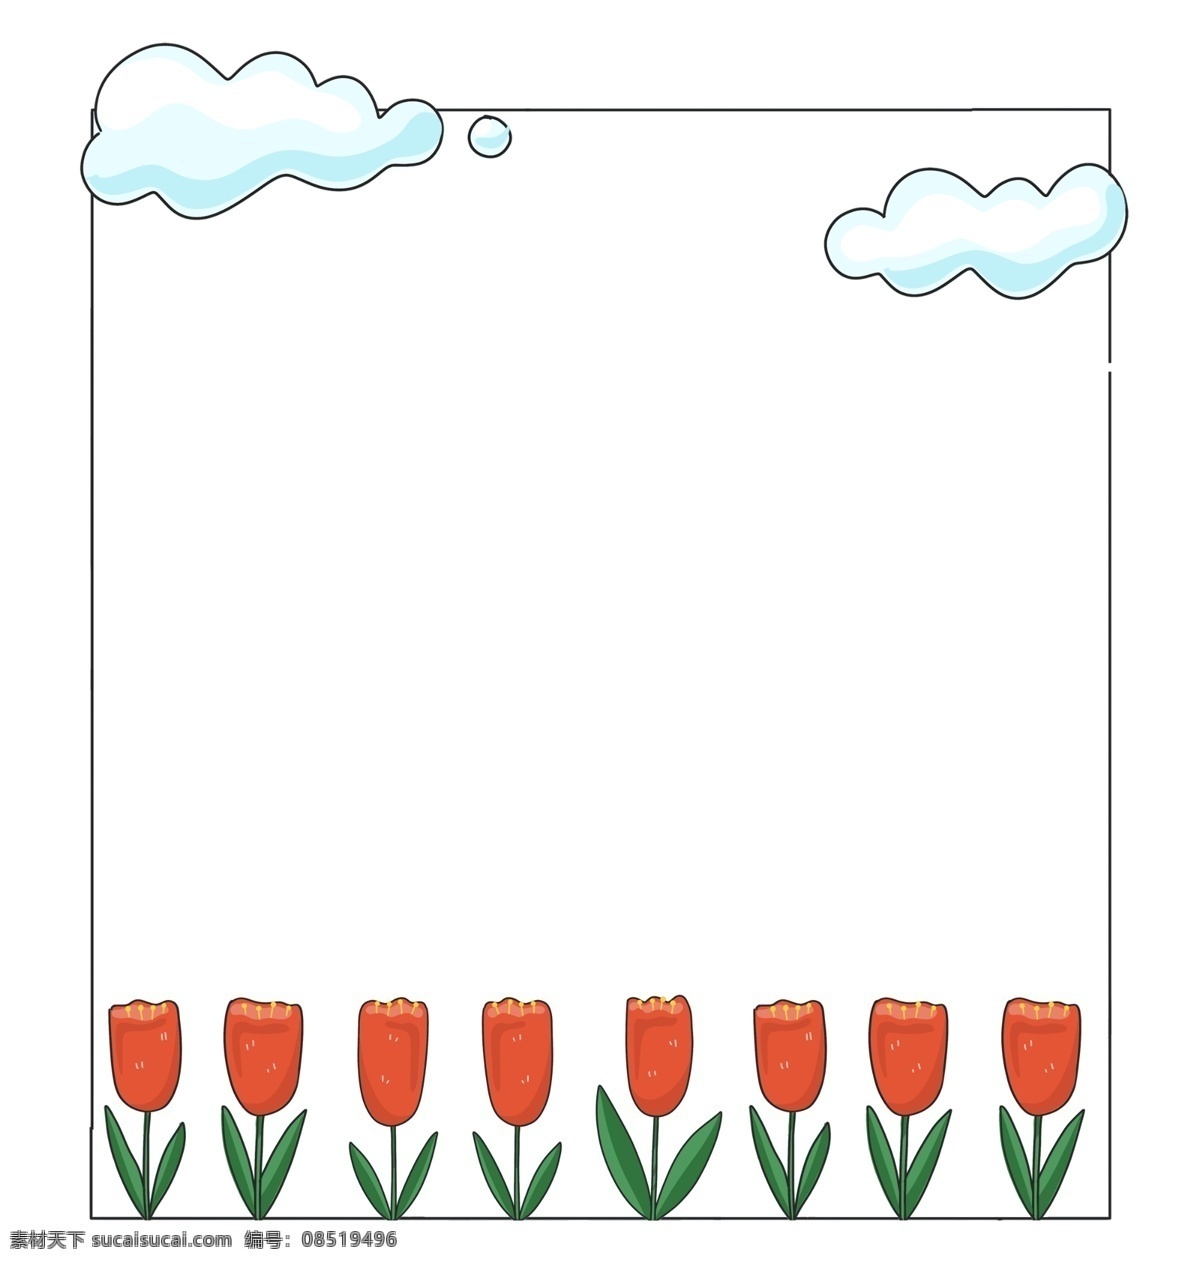 红色 郁金香 边框 郁金香花朵 卡通边框 美丽边框 漂亮边框 小物边框 物品边框 白色的云朵